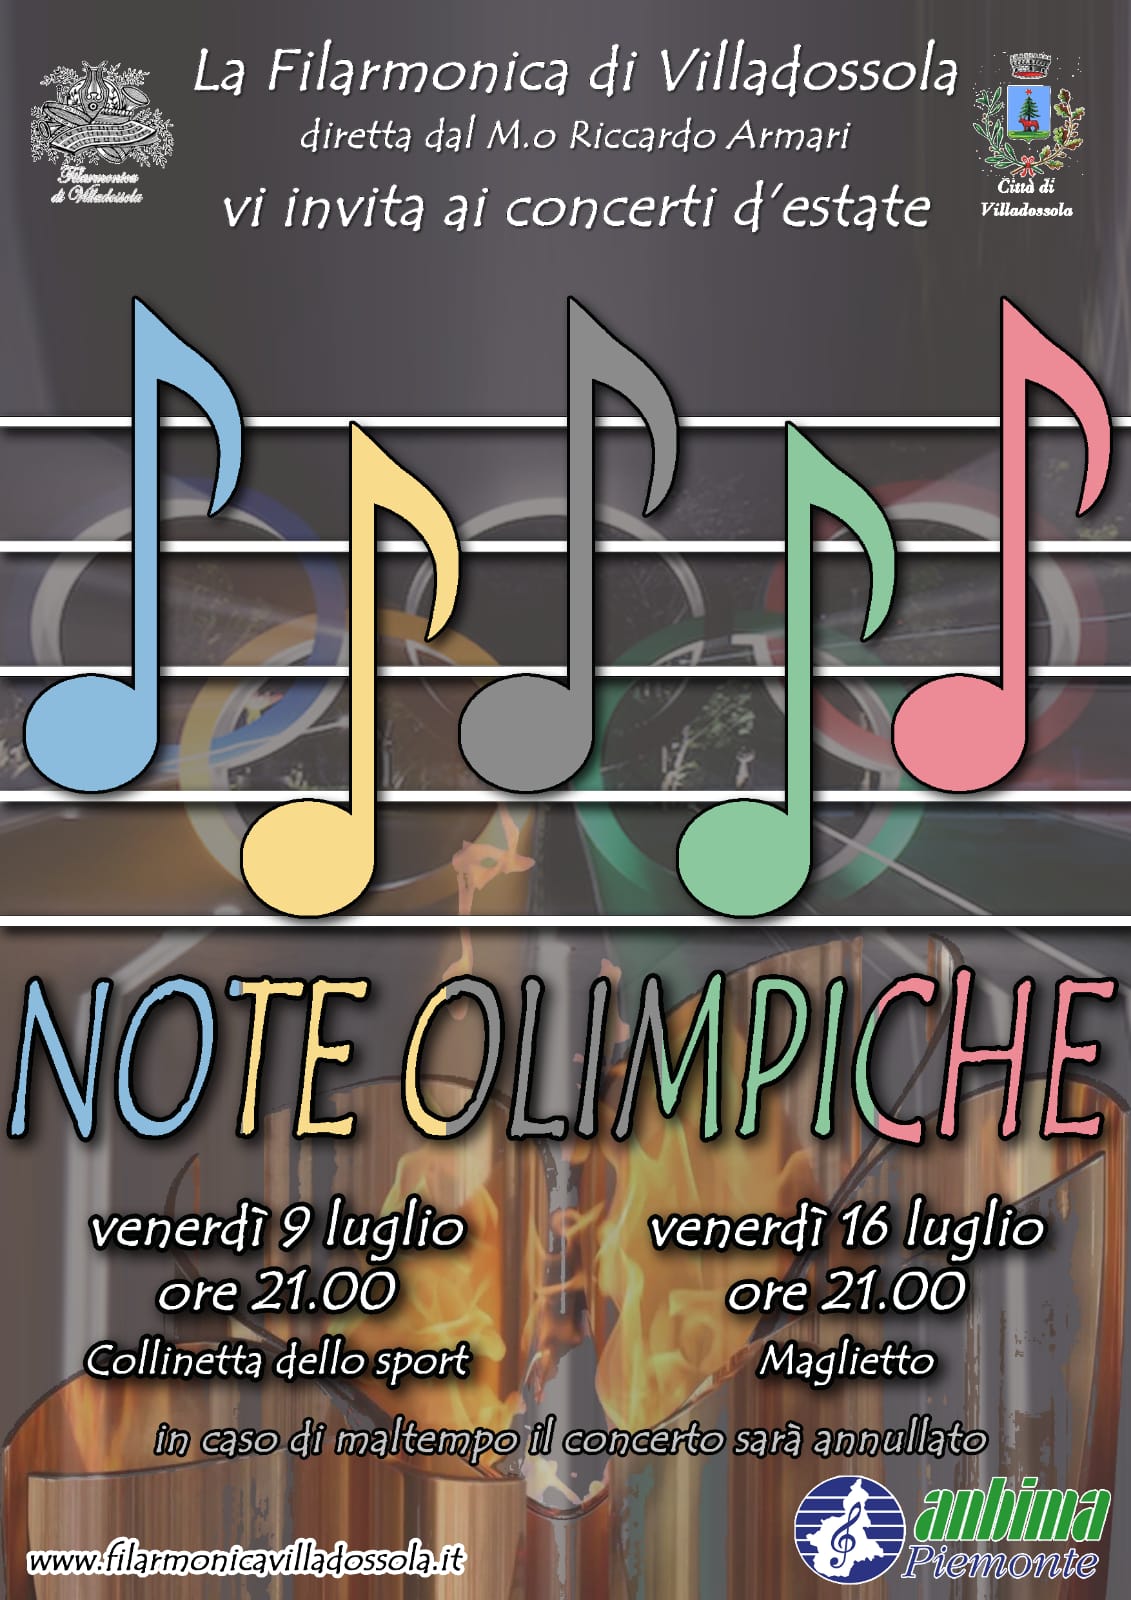 Note Olimpiche - Filarmonica di Villadossola